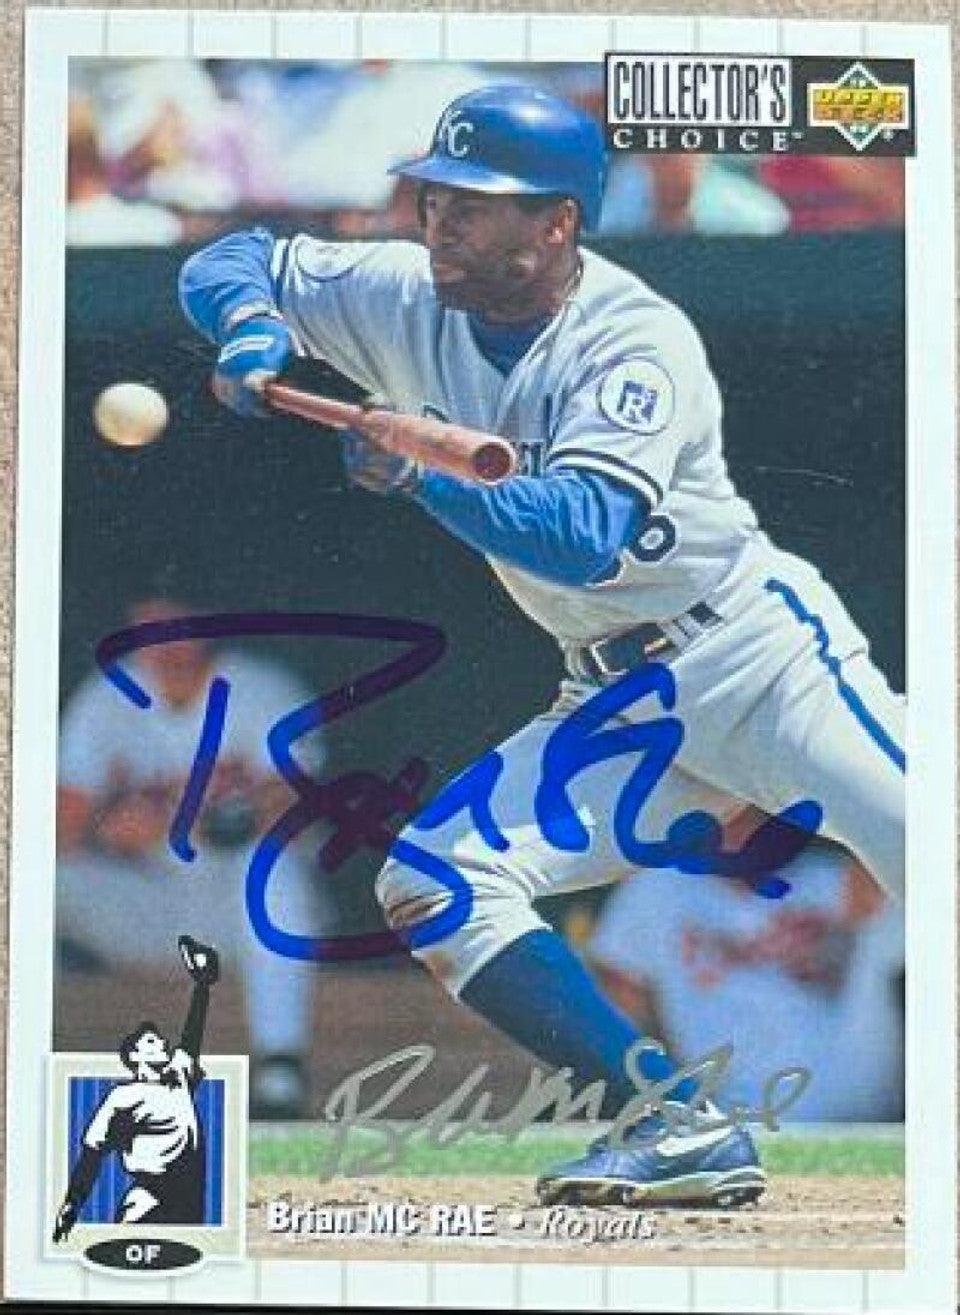 Brian McRae Signed 1994 Collector's Choice Silver Signature Baseball Card - Kansas City Royals - PastPros